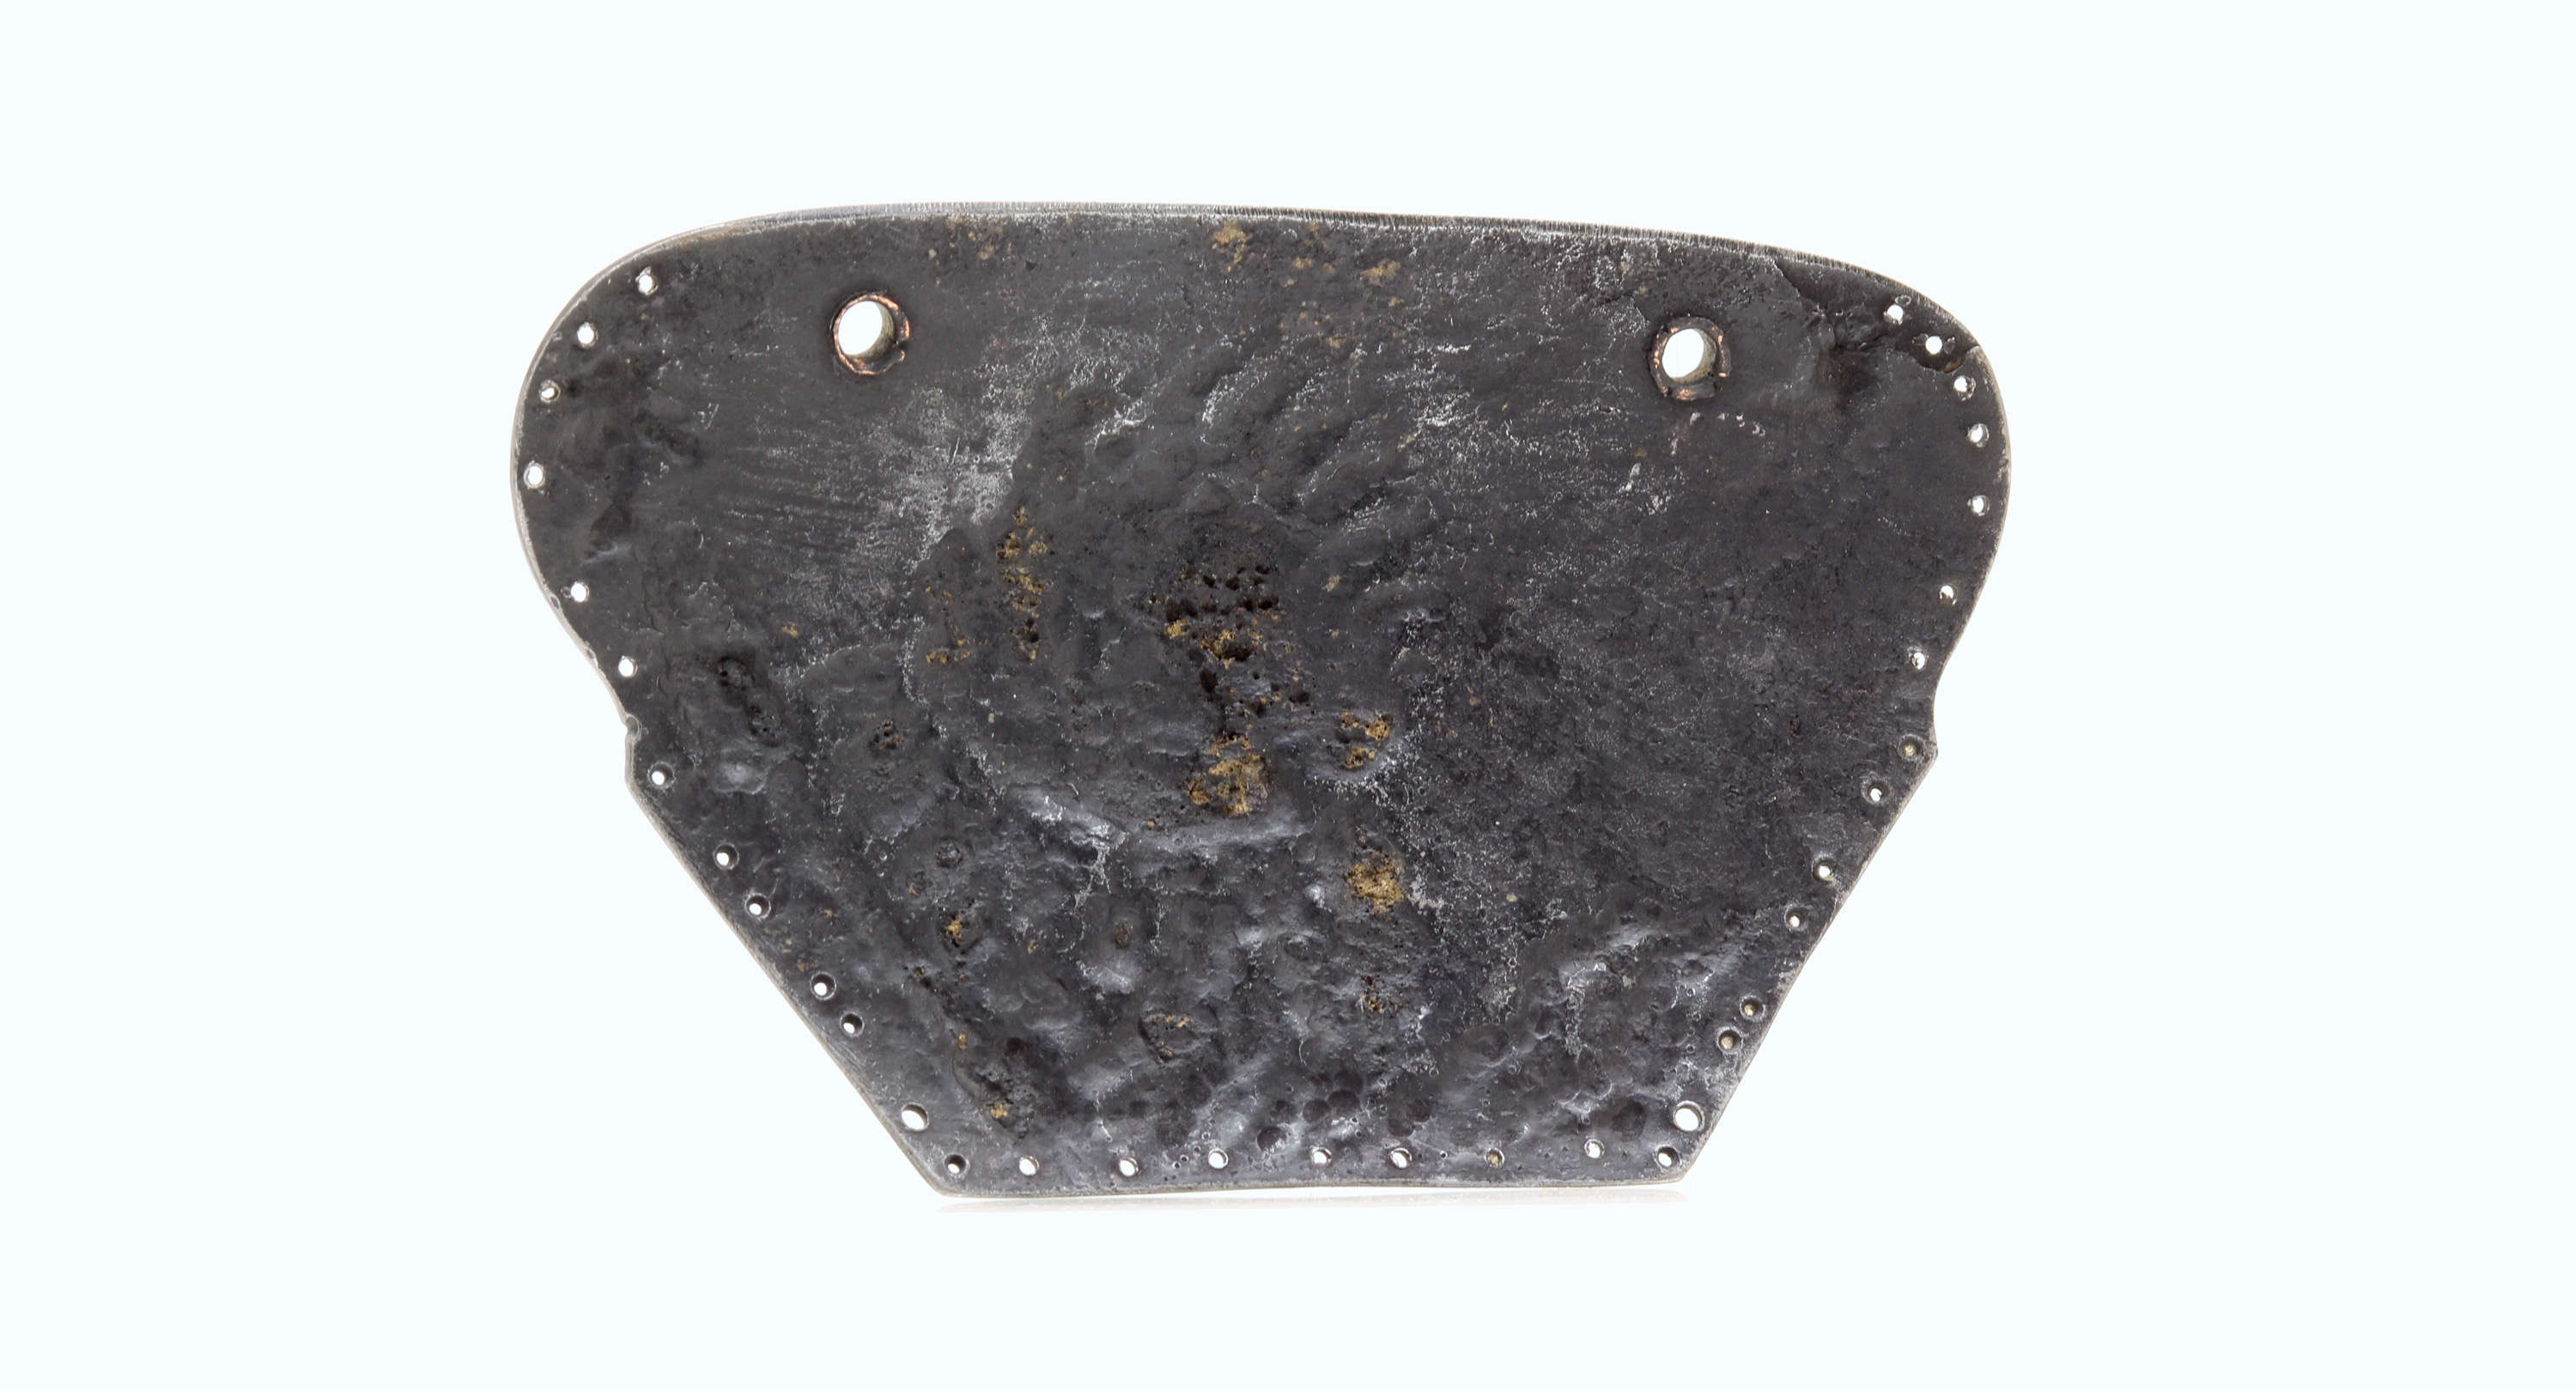 Japanese uchidashi armor plate